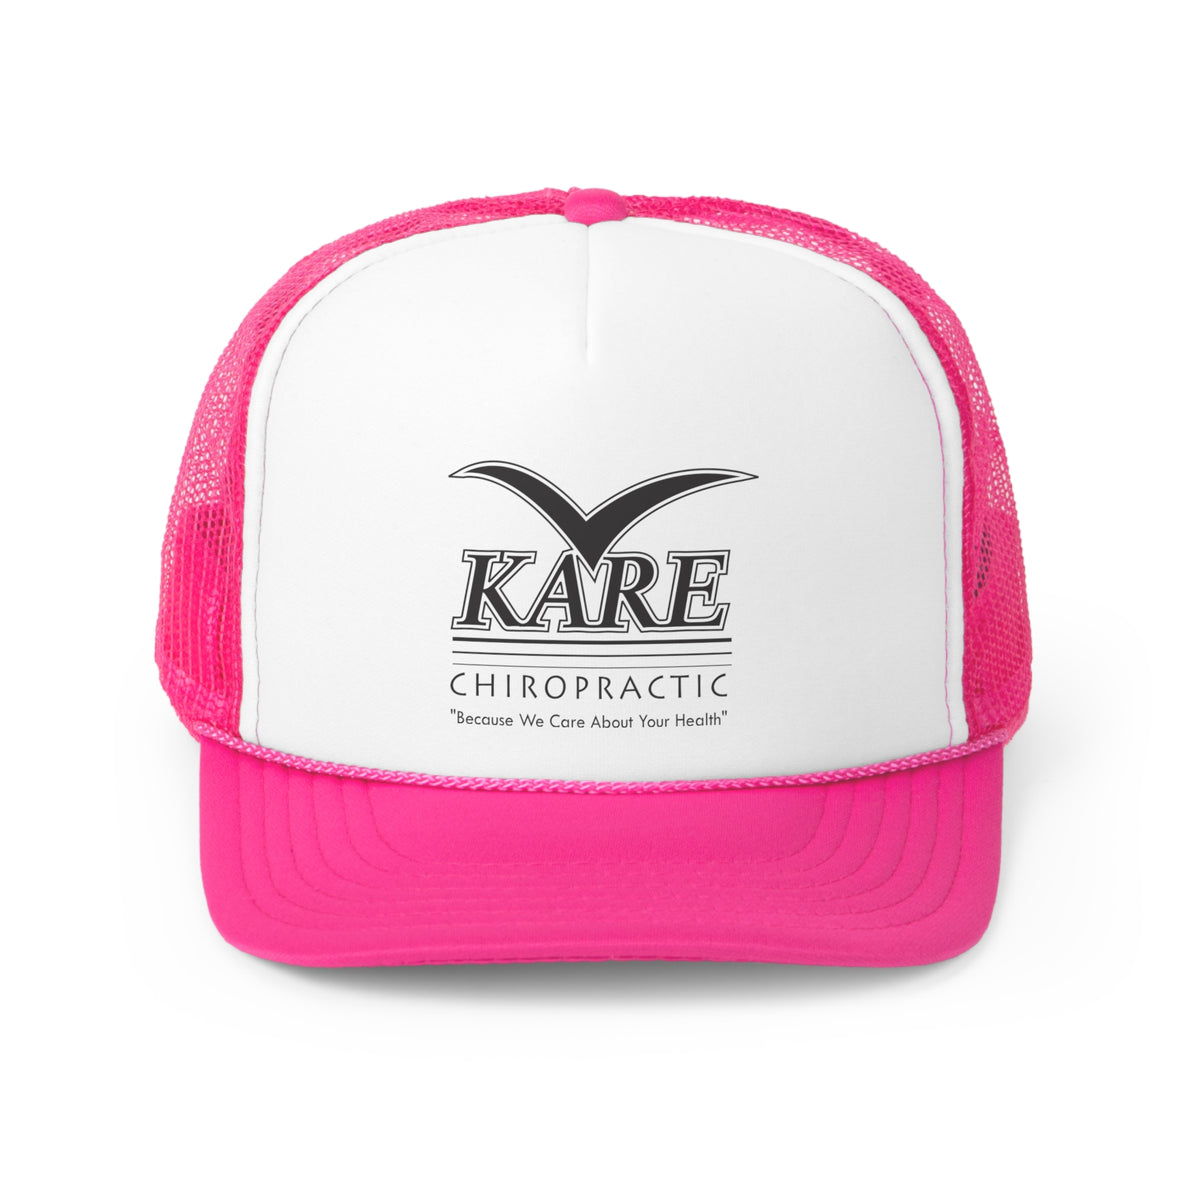 Kare Chiropractic Trucker Caps